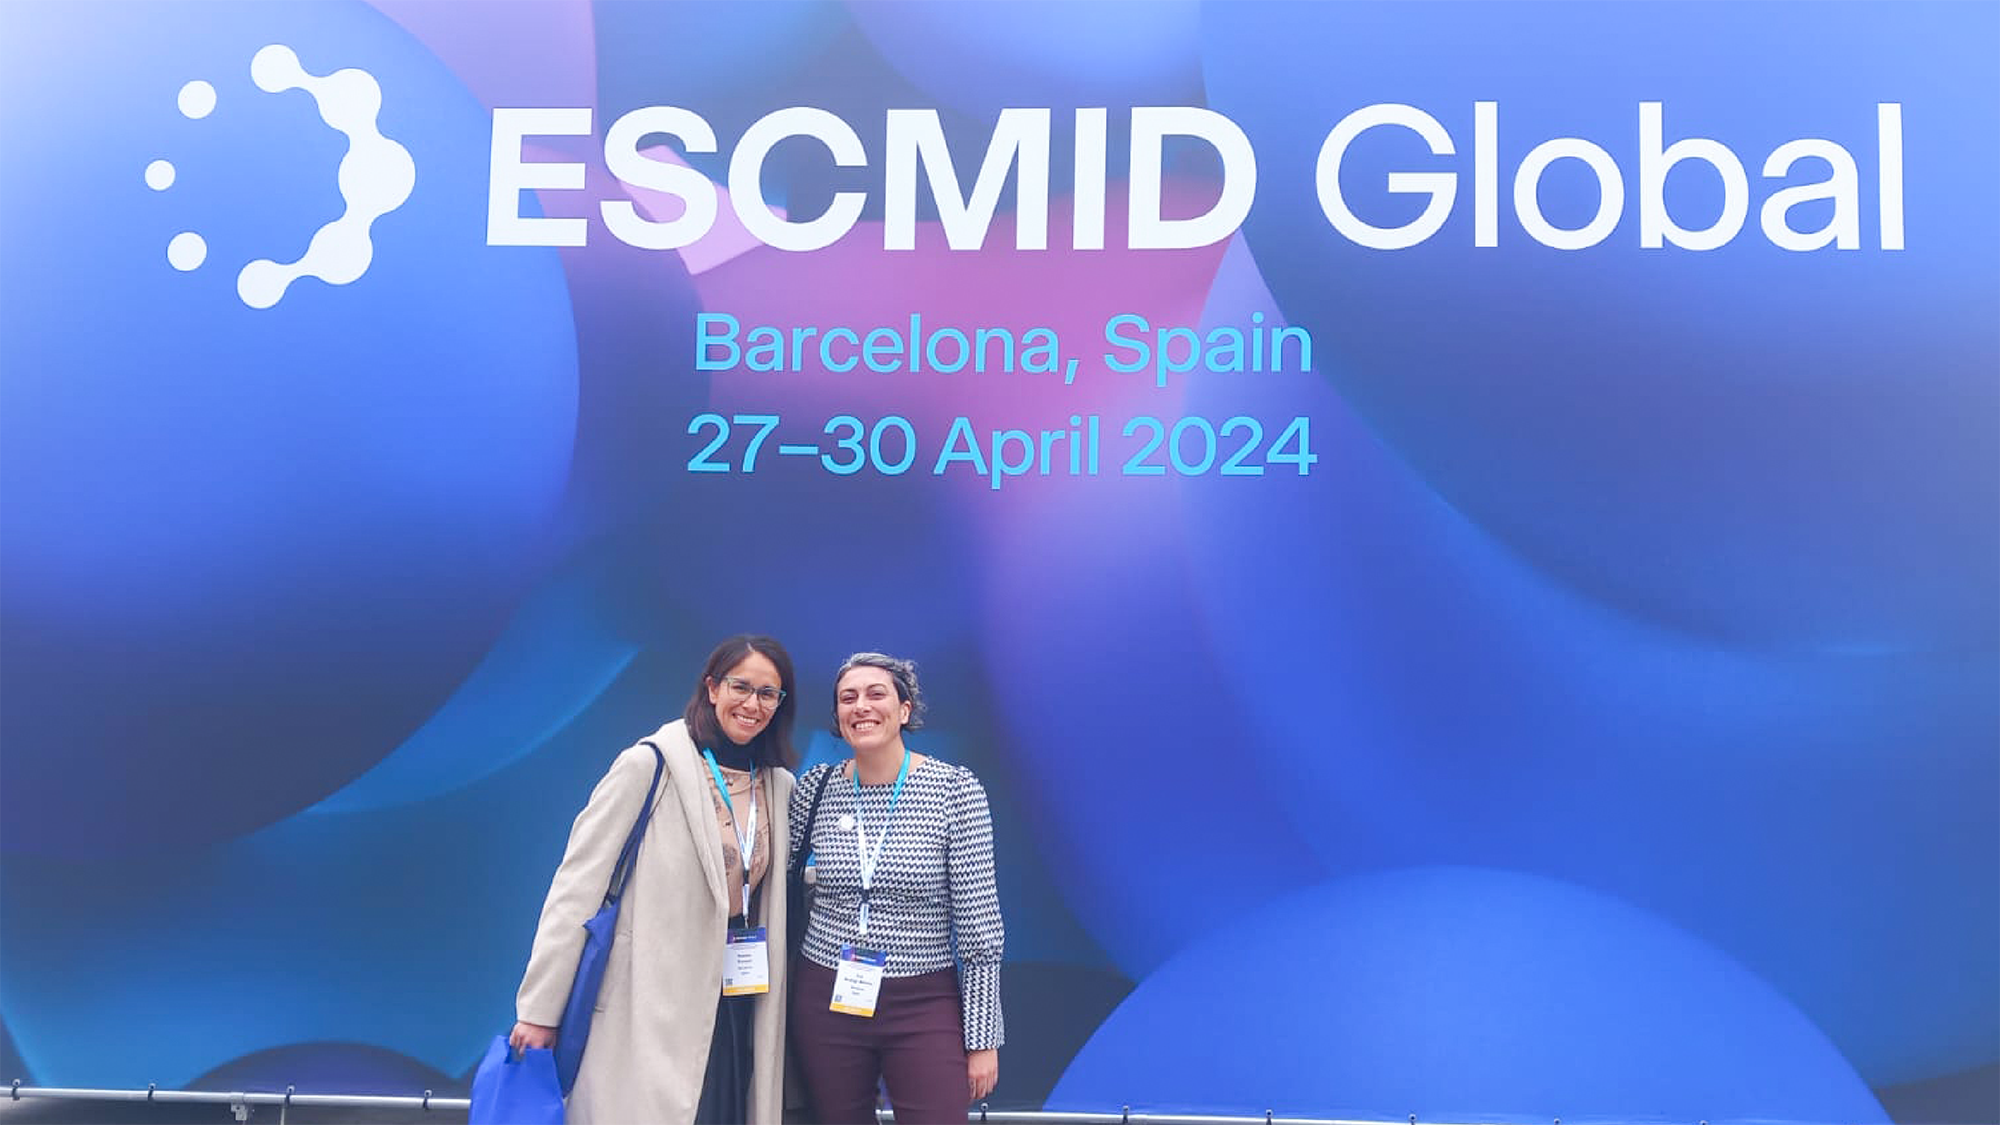 Participació al 34è congrés ESCMID Global